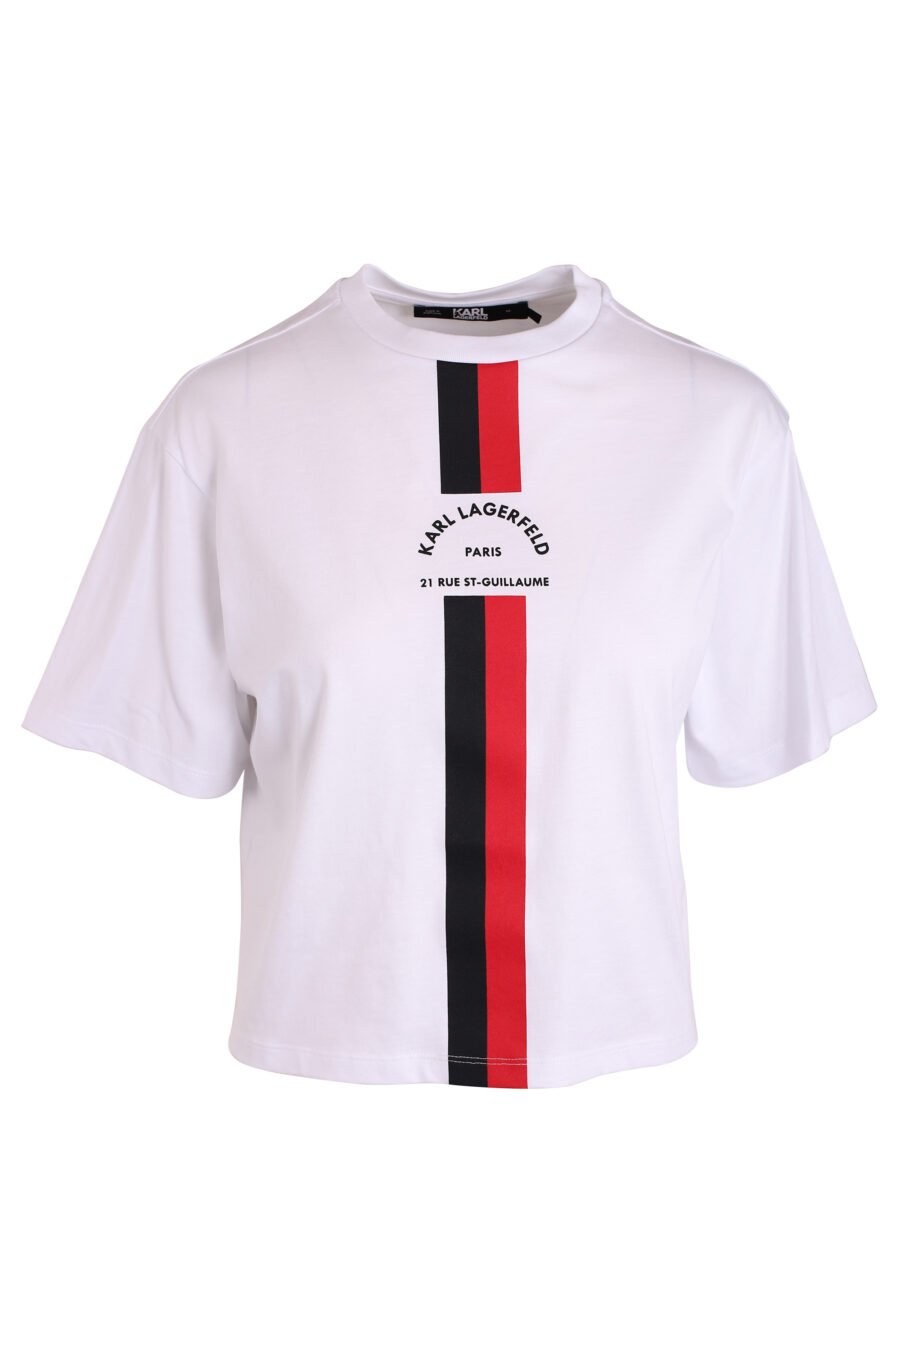 Camiseta blanca con franja central bicolor - IMG 3411